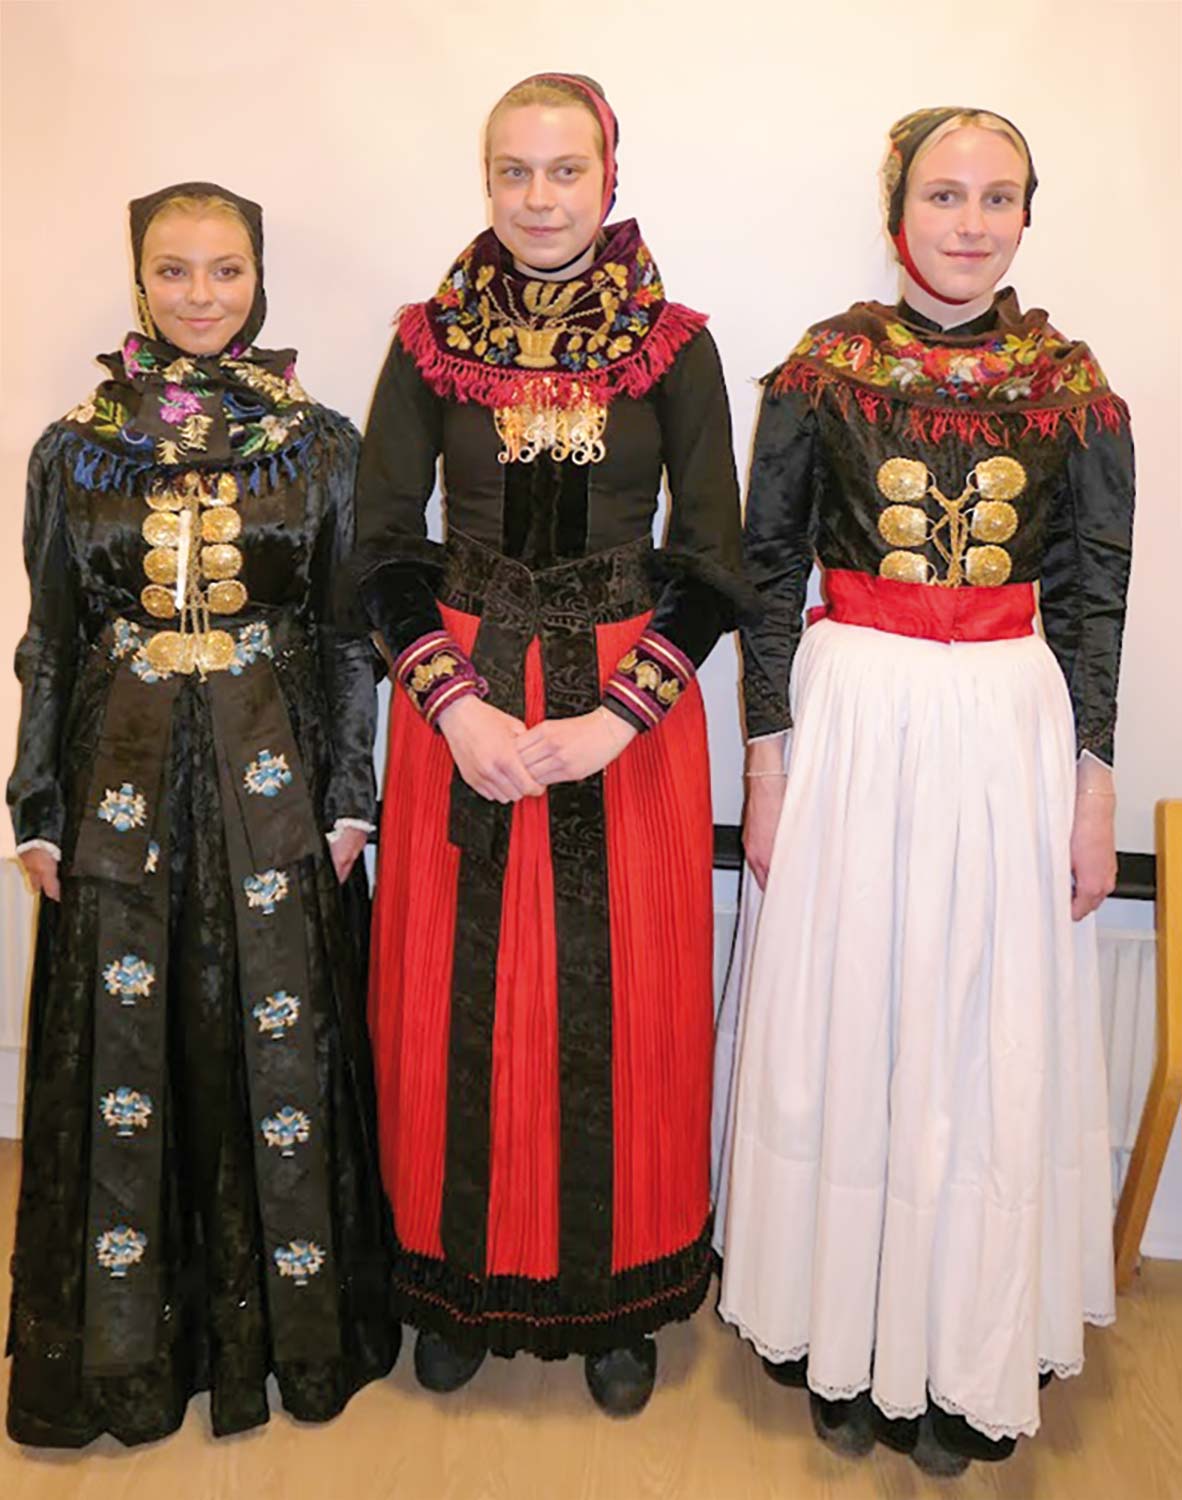 Tre piger lader sig iklæde forskellige udgaver af amagerdragter; Jasmin Plöger Flenø i den sorte festdragt, Julie Gernager Petersen i den røde højtidsdragt og Nanna Gernager Petersen i den hvide ungpigedragt.